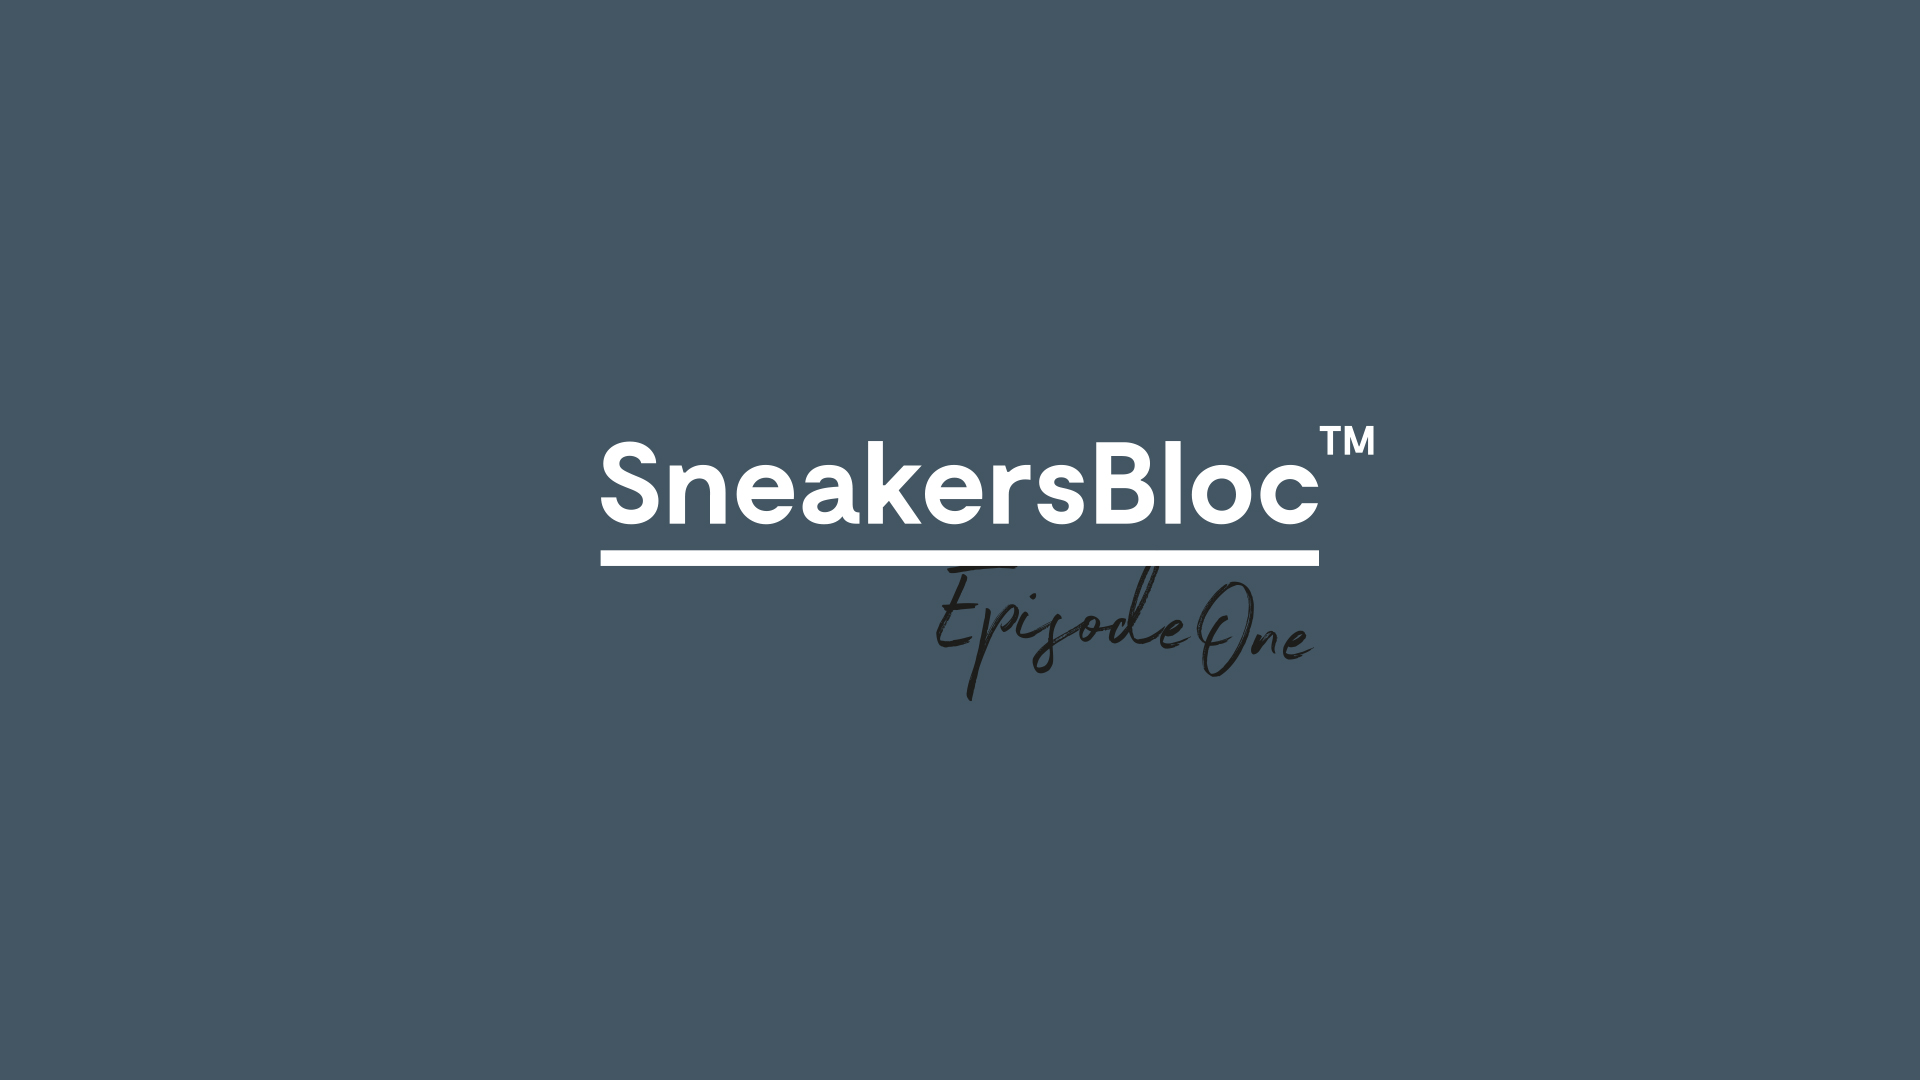 SneakersBloc